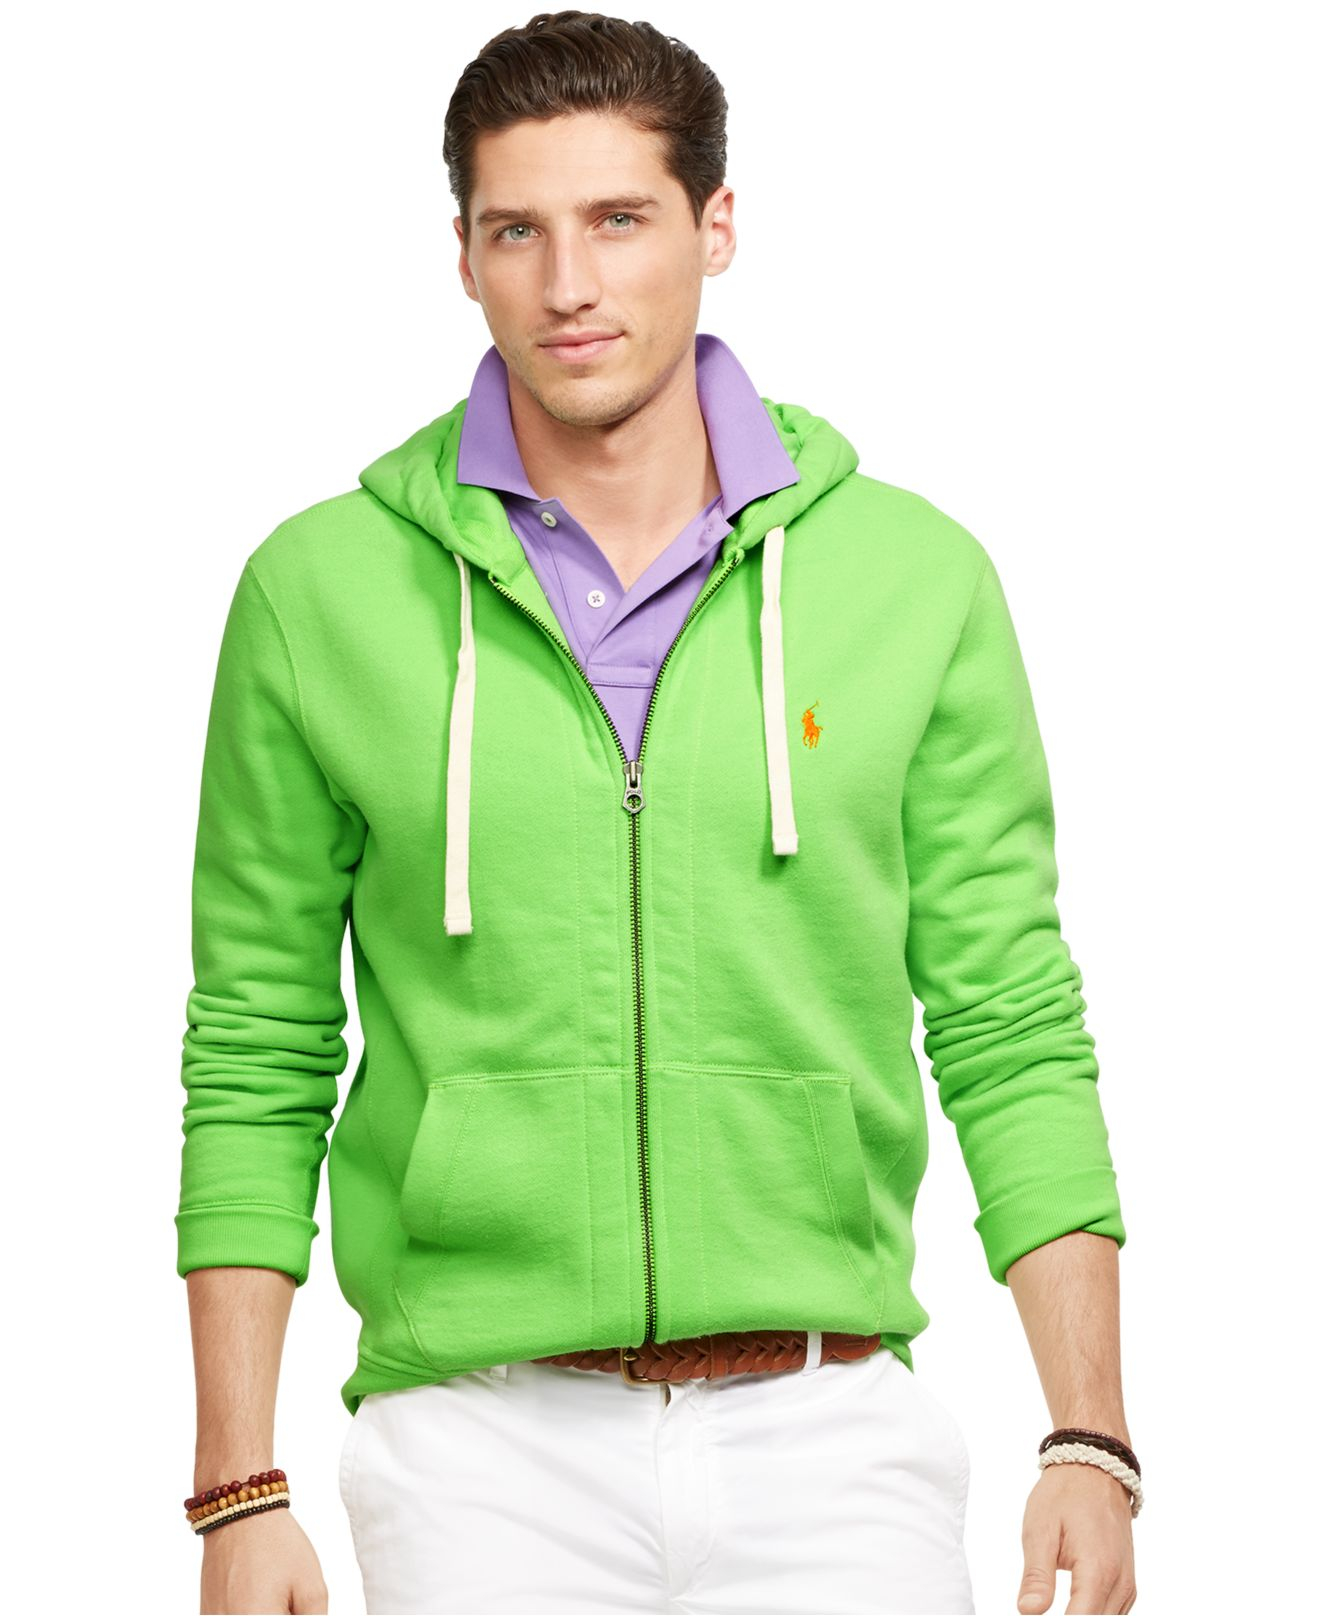 Polo Ralph Lauren Full-Zip Classic Fleece Hoodie in Green for Men - Lyst